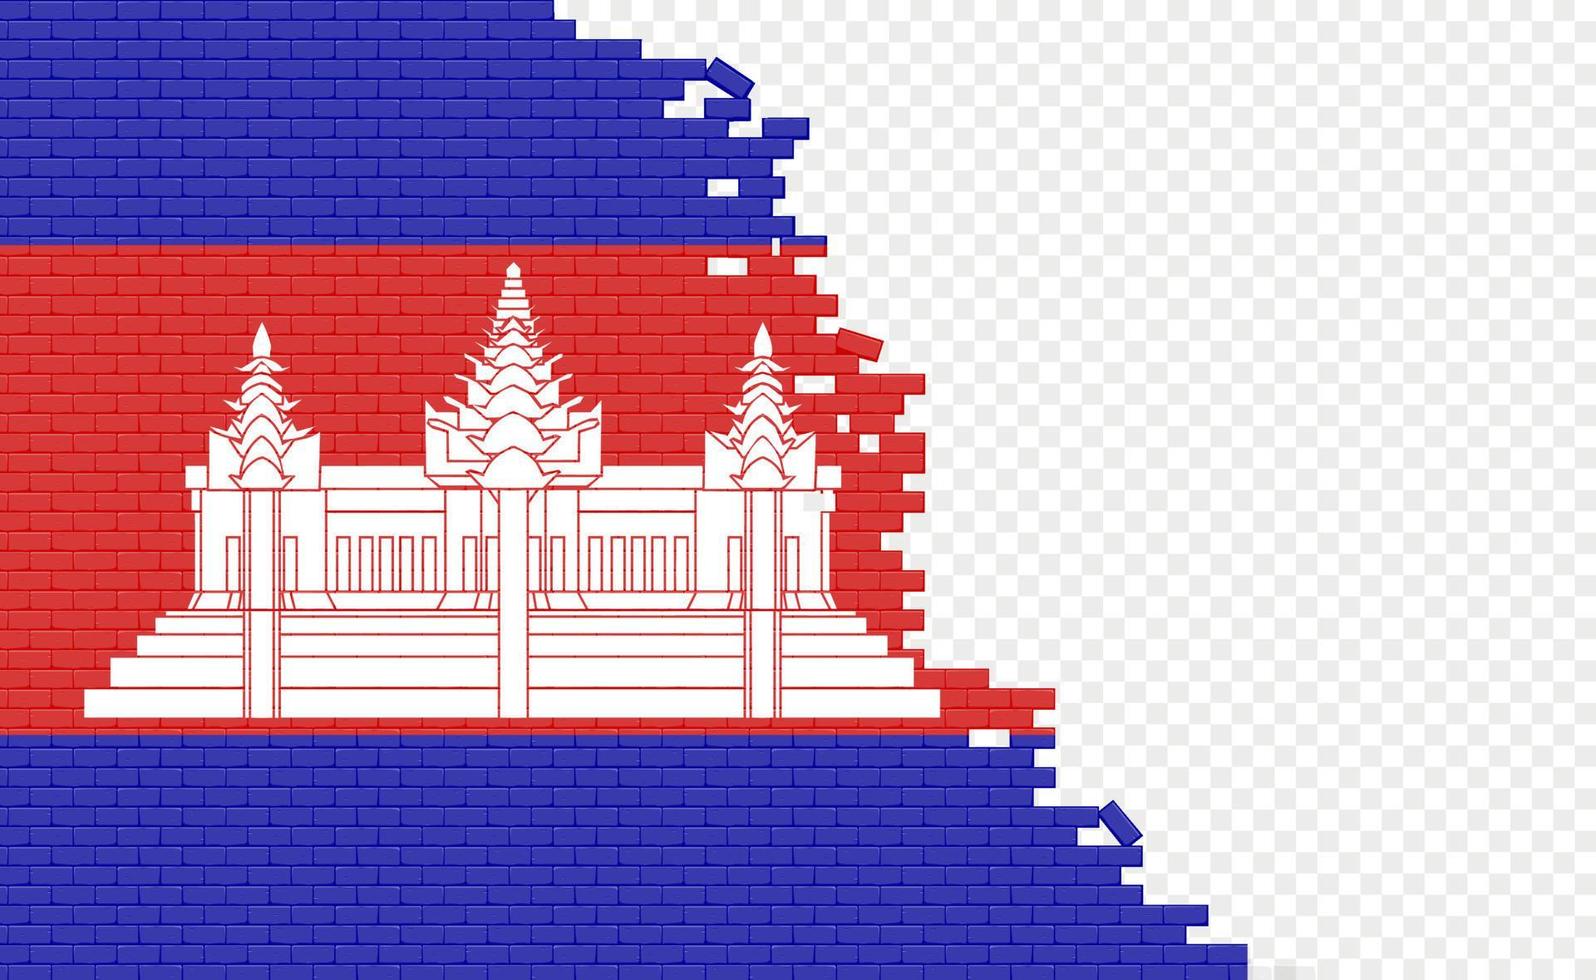 drapeau cambodge sur mur de briques cassées. champ de drapeau vide d'un autre pays. comparaison de pays. édition facile et vecteur en groupes.